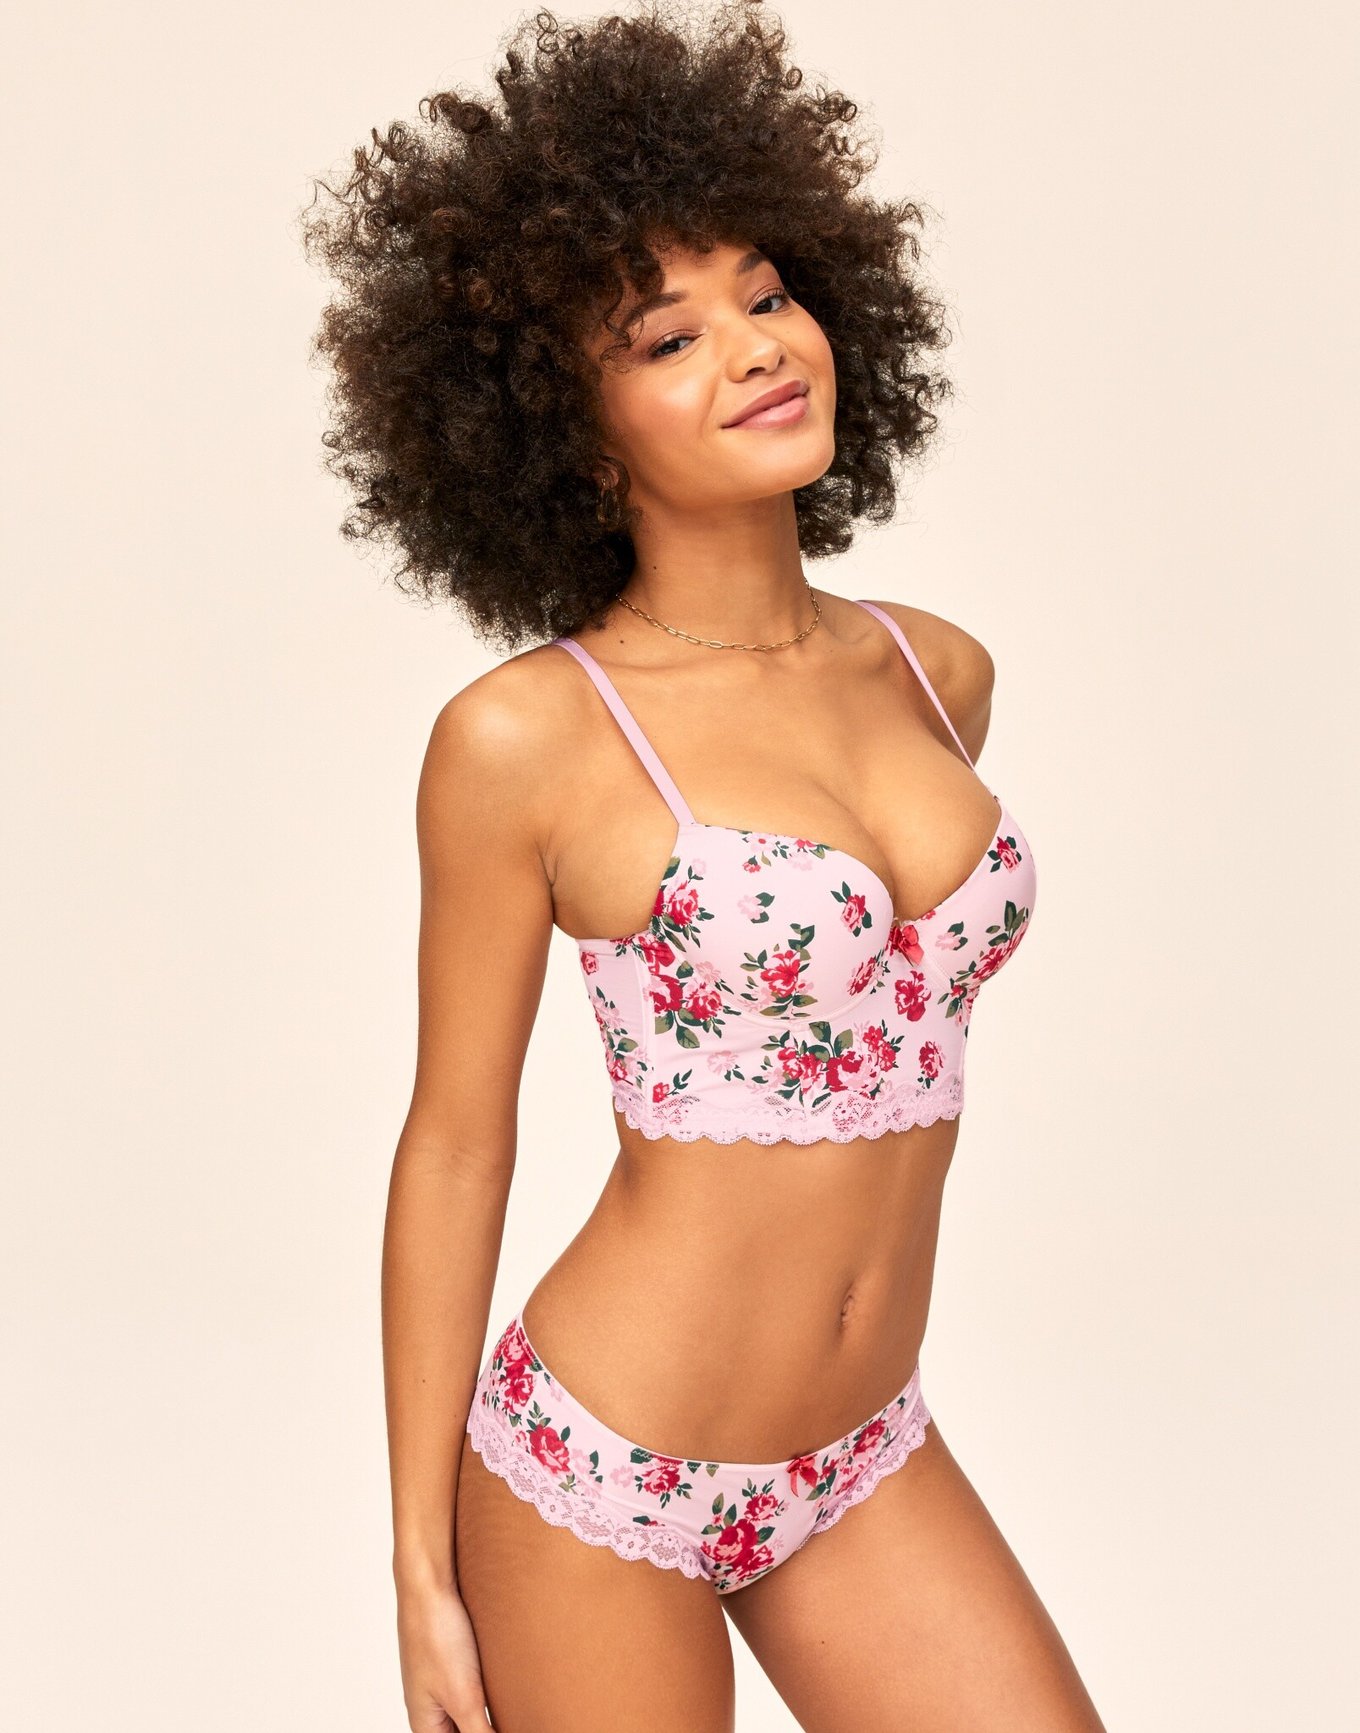 Popular Sexy Hot Flora Printed Bra Set for Ladies Mature Underwear